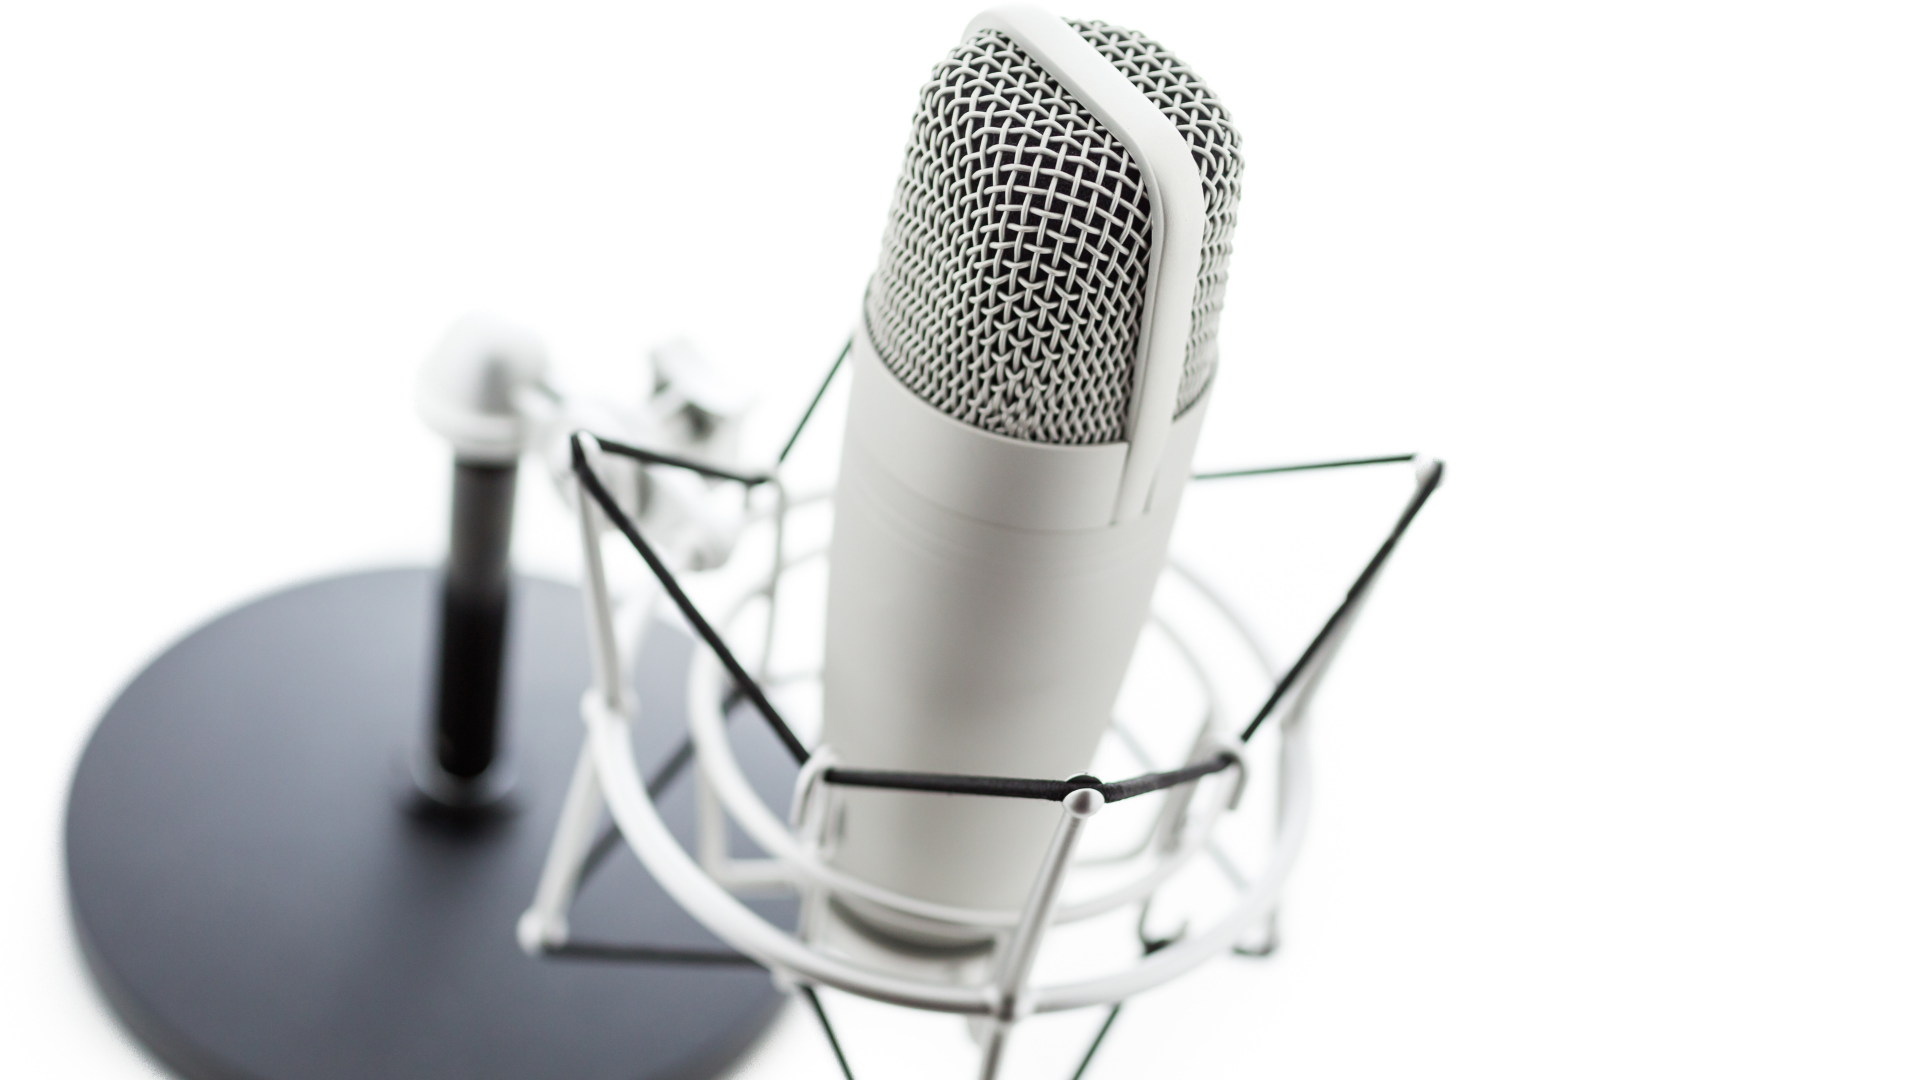 Beste podcastsoftware | Top 7 programma's beoordeeld